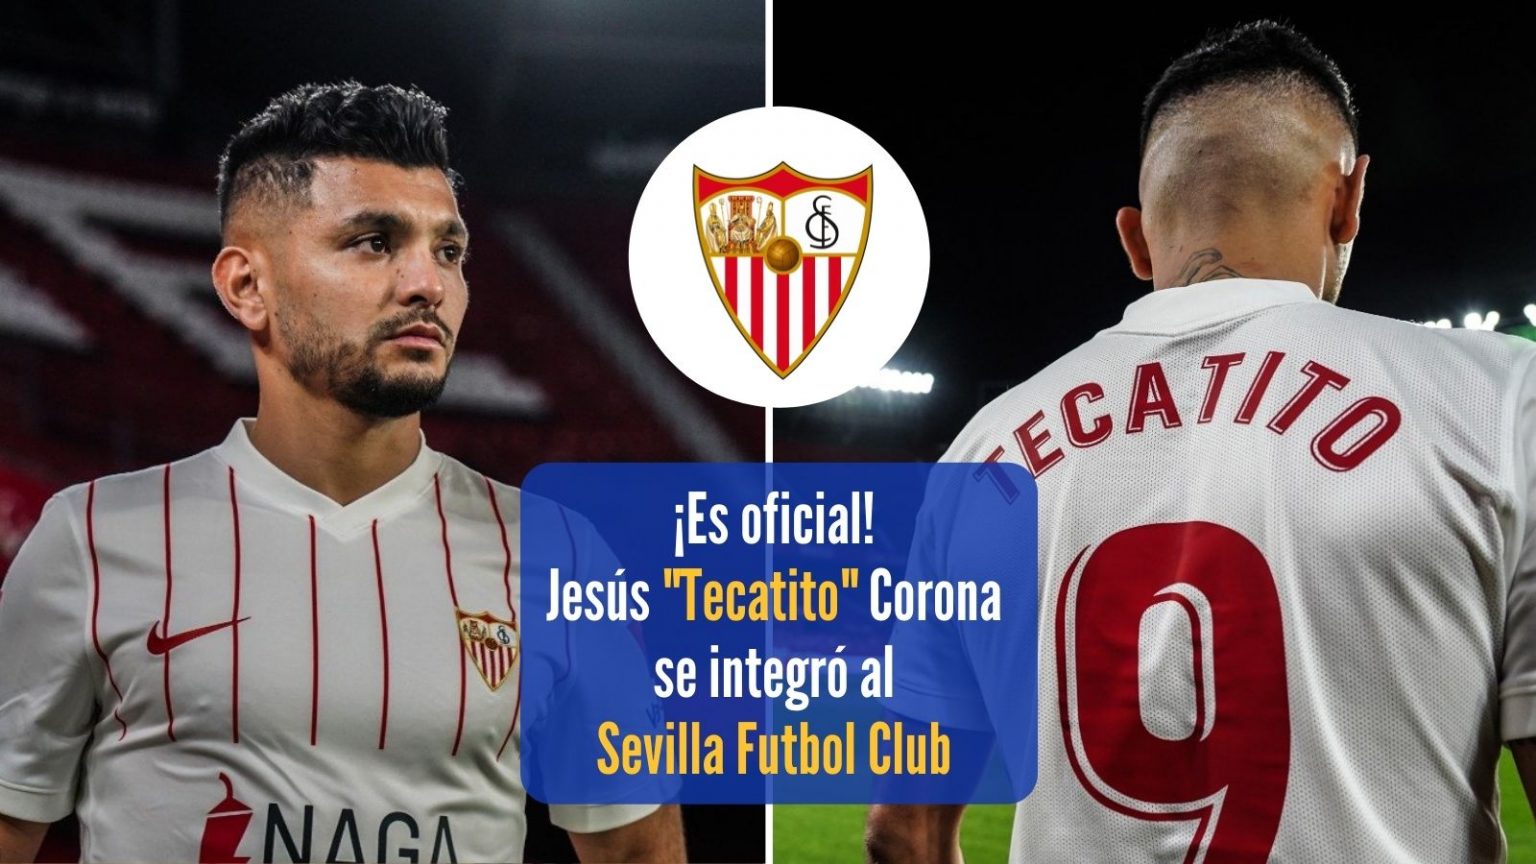 ¡Es oficial! El “Tecatito” Corona ya es parte el club de futbol Sevilla